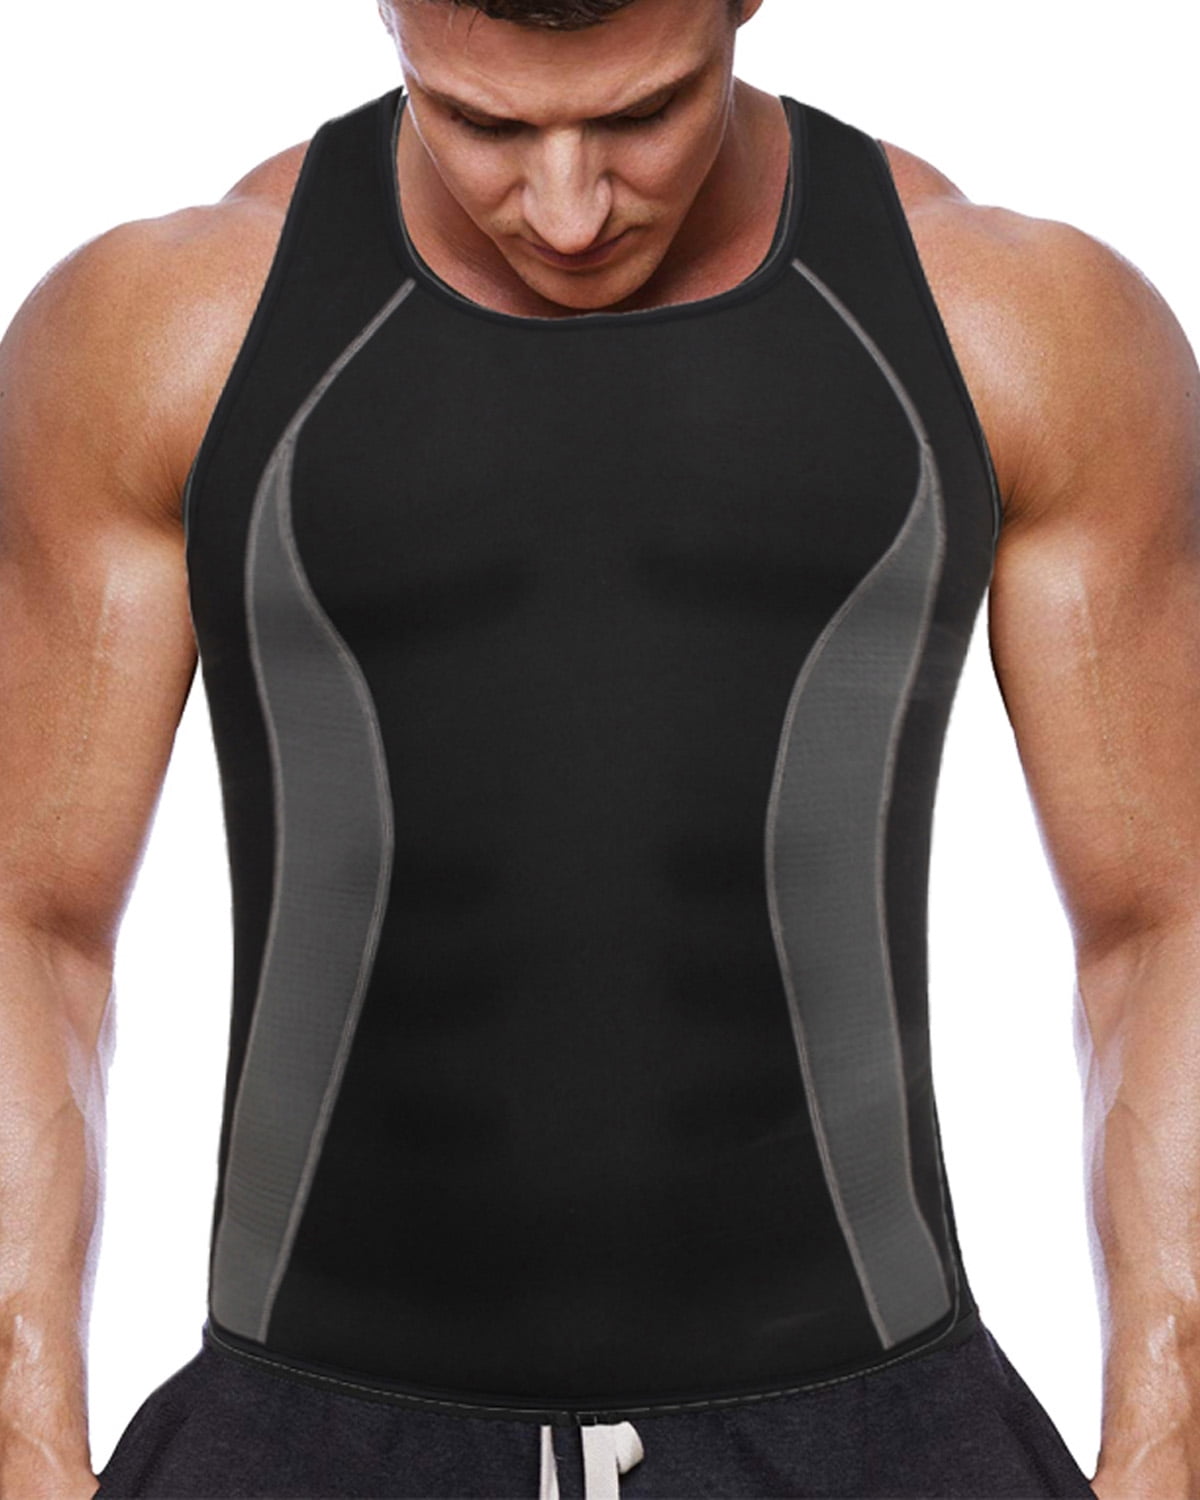 Men Gym Sauna Suit Sweat Vest Tank Top Neoprene Shirt Body Shaper Waist Trainer